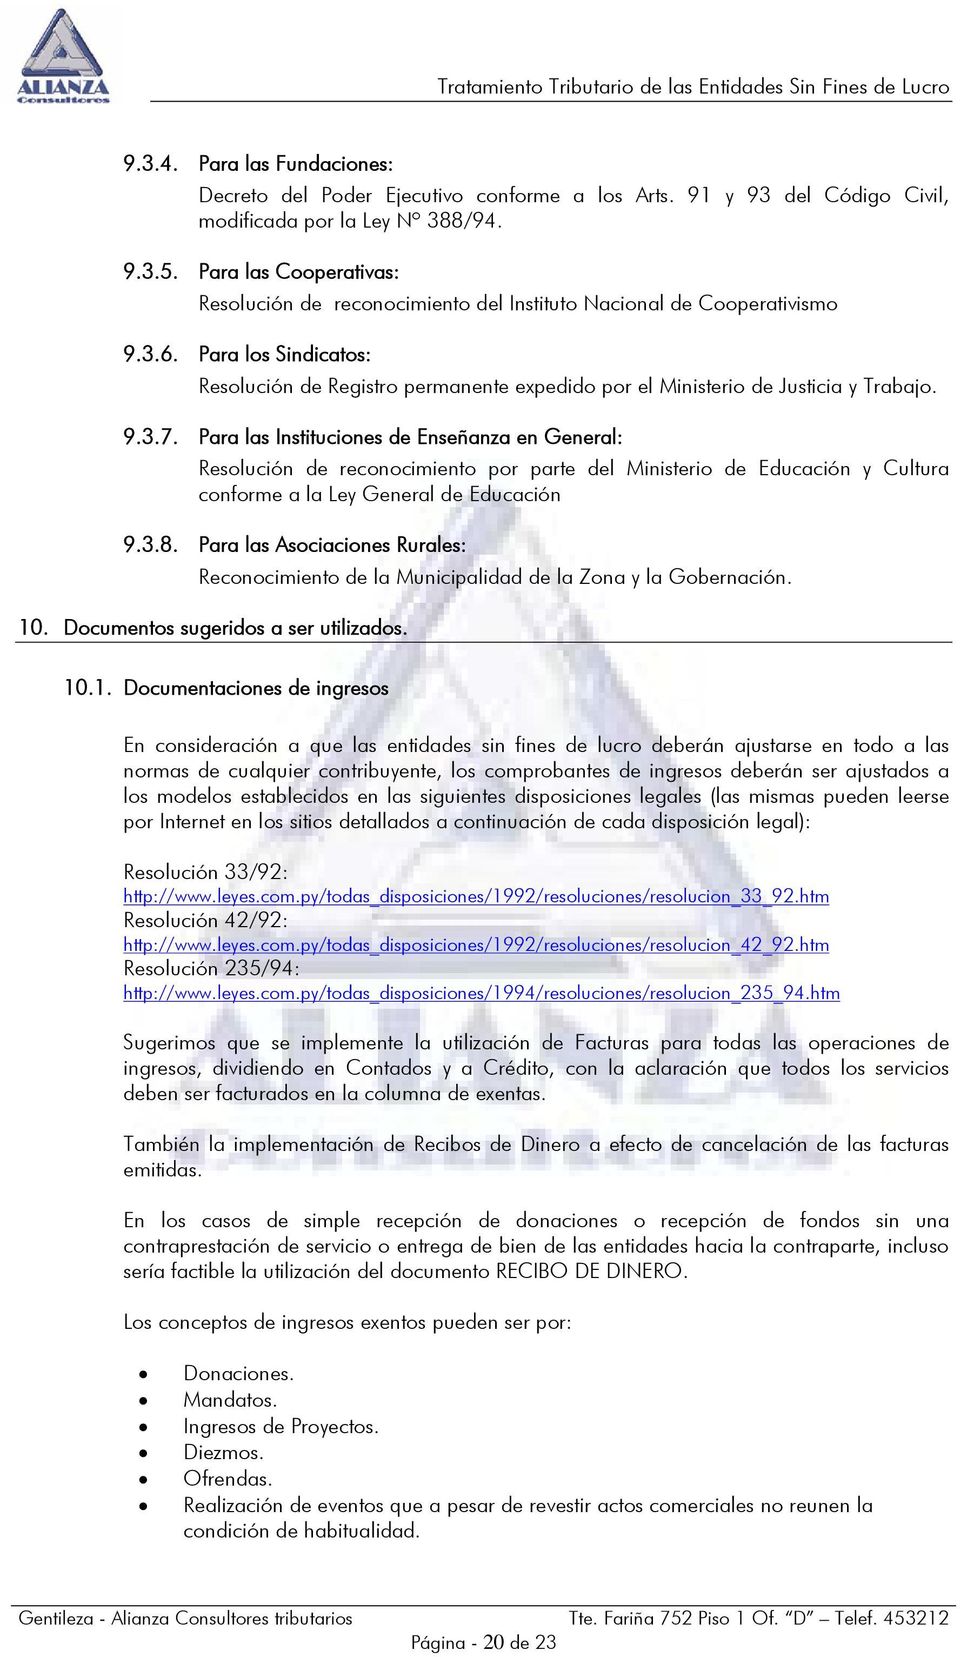 Para los Sindicatos: Resolución de Registro permanente expedido por el Ministerio de Justicia y Trabajo. 9.3.7.